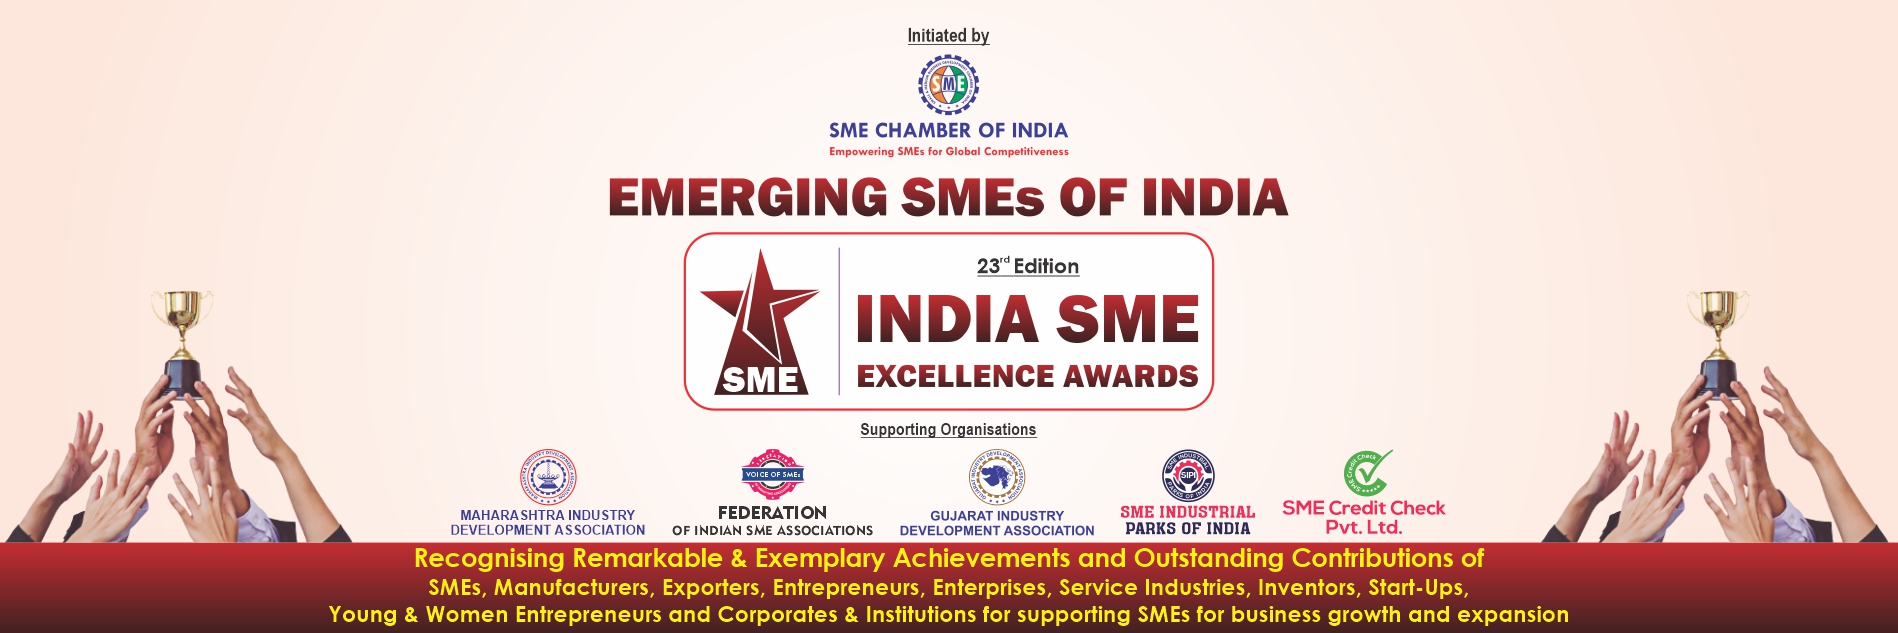 INDIA SME EXCELLENCE AWARDS